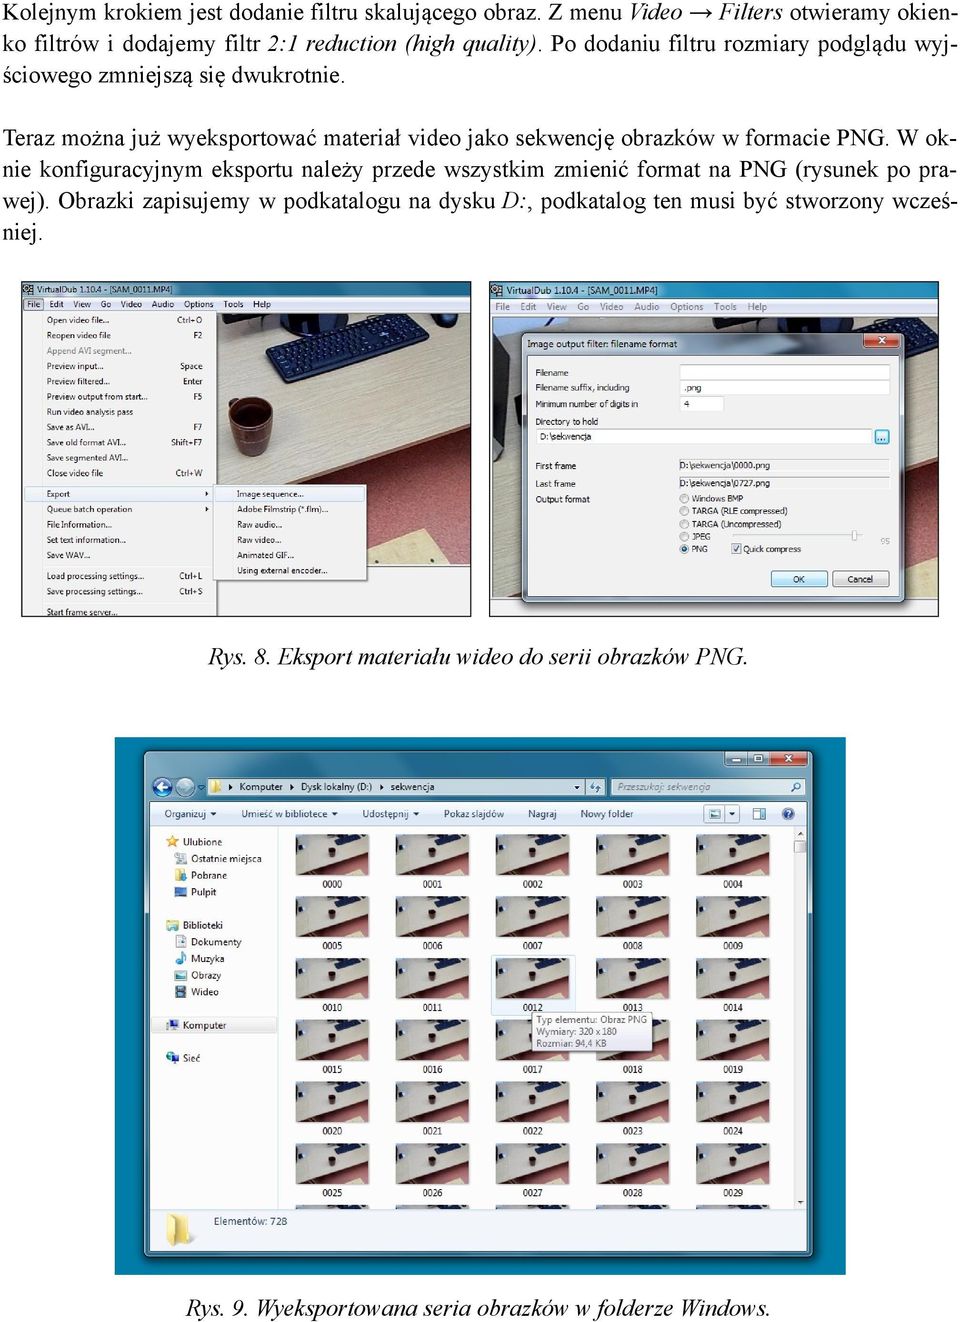 Teraz można już wyeksportować materiał video jako sekwencję obrazków w formacie PNG.